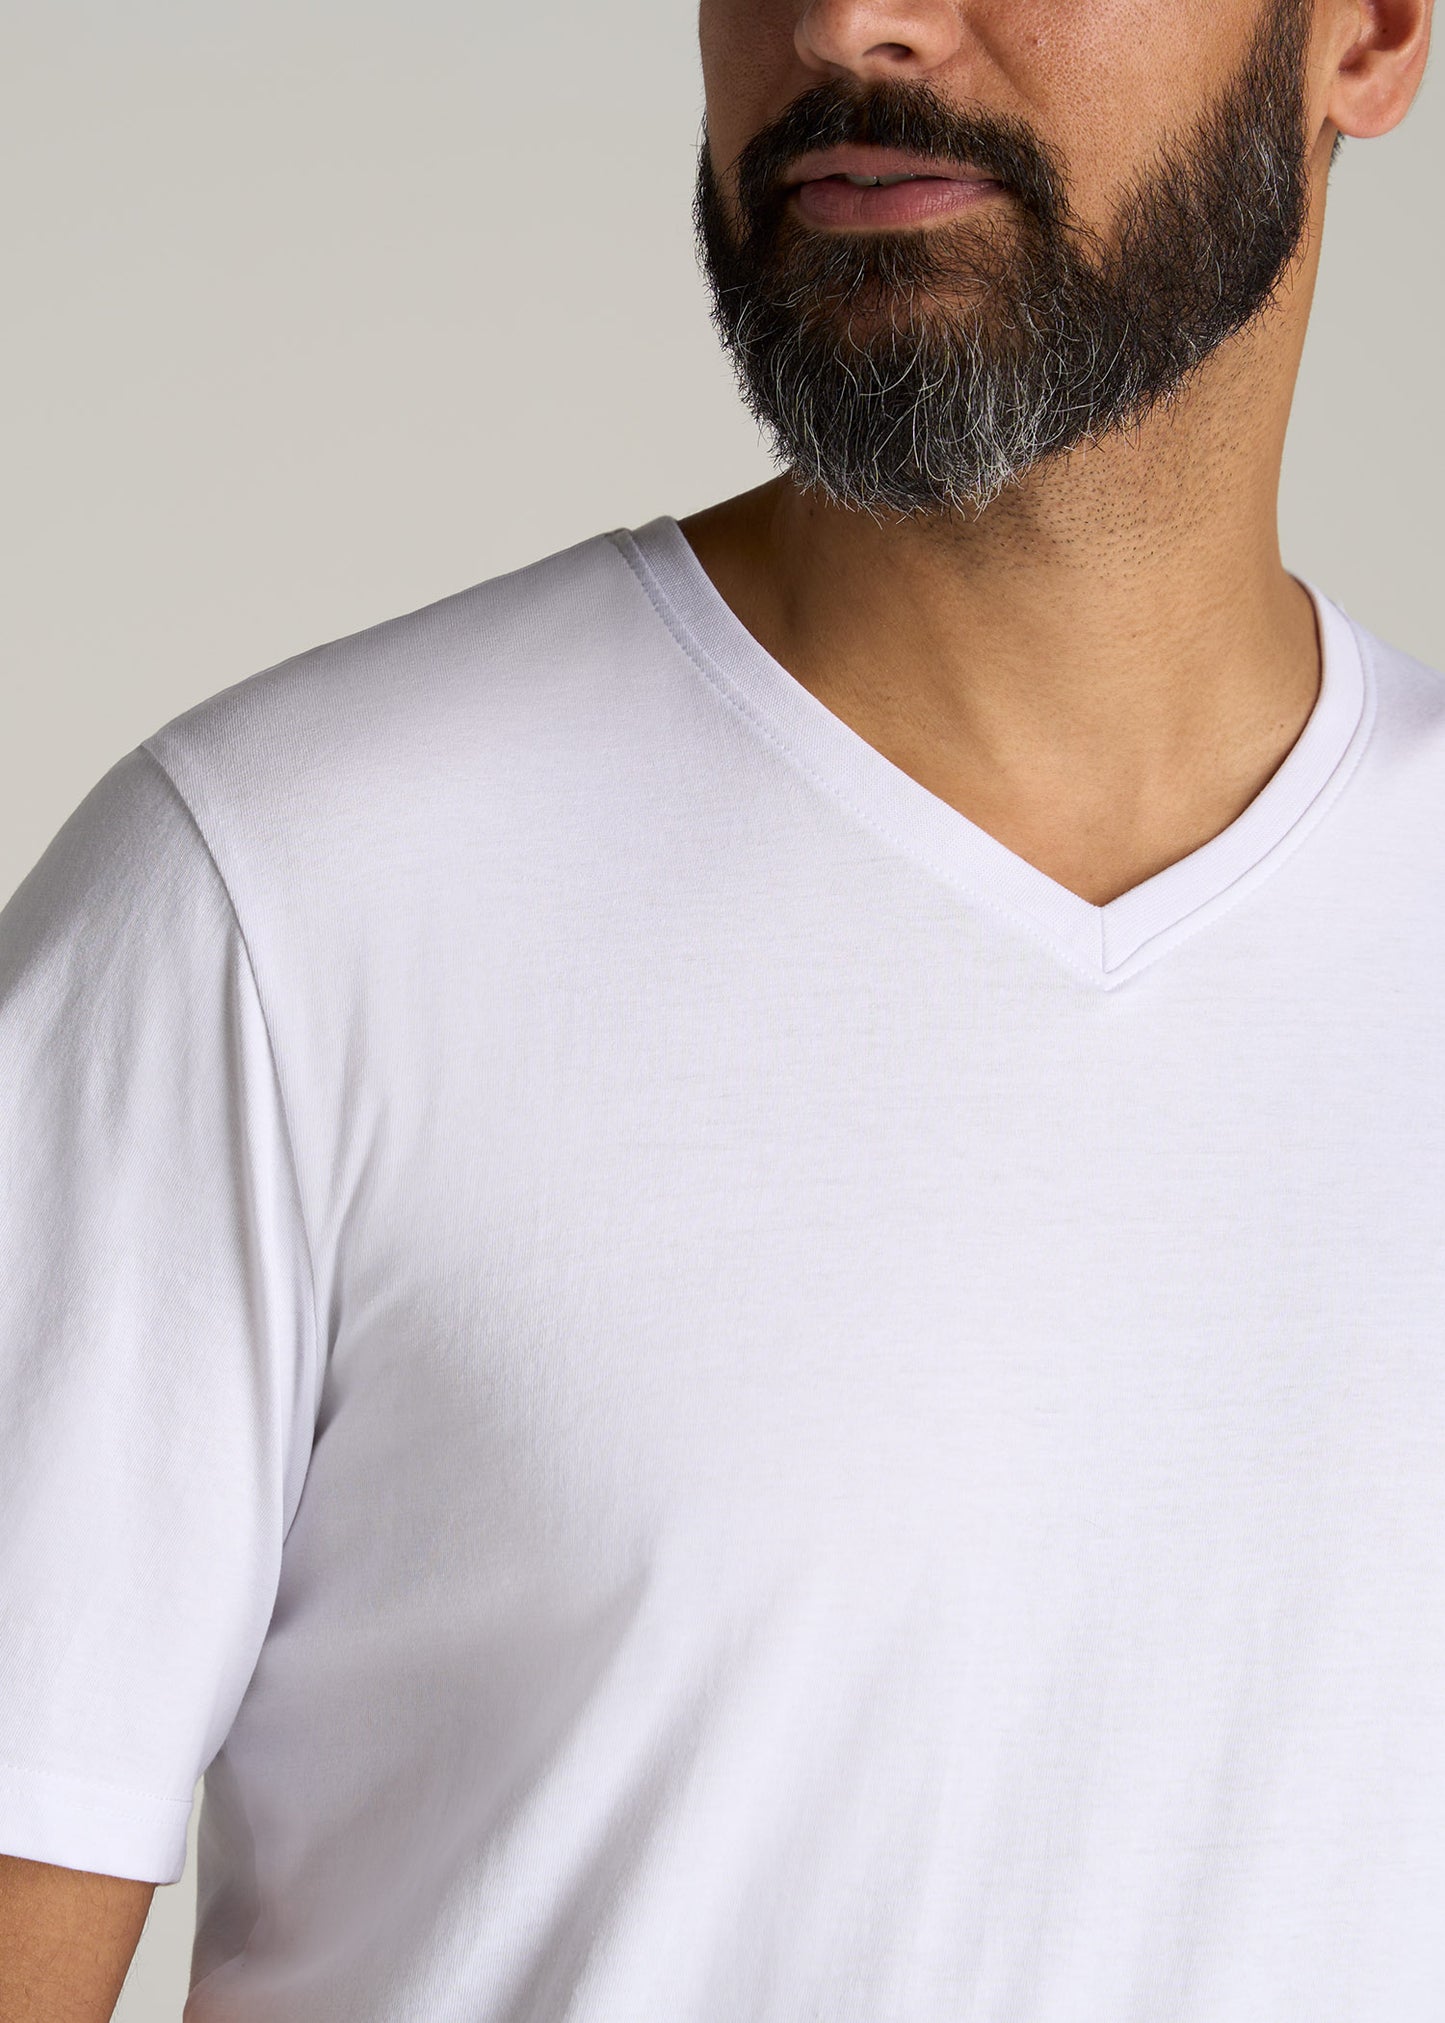    American-Tall-Men-Everyday-REGULAR-FIT-V-Neck-T-Shirt-White-detail